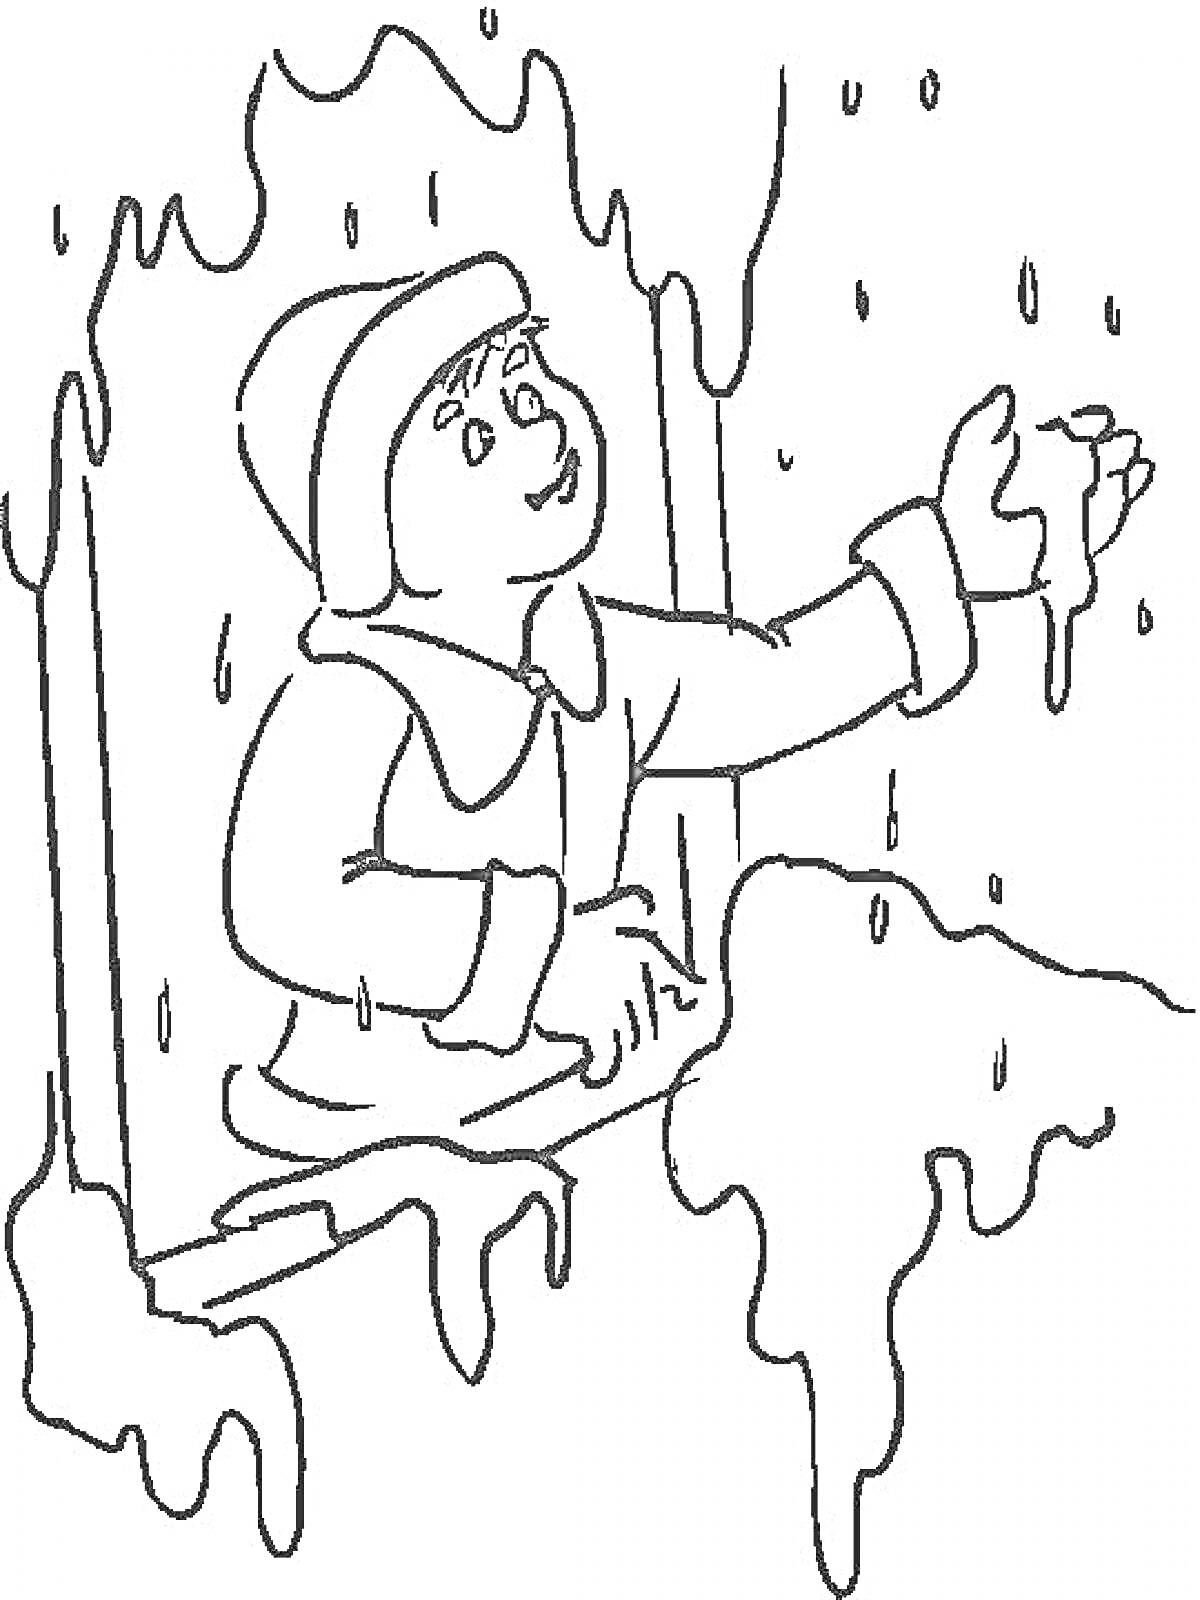 Ребенок в зимней одежде тянет руку к падающему снегу из окна